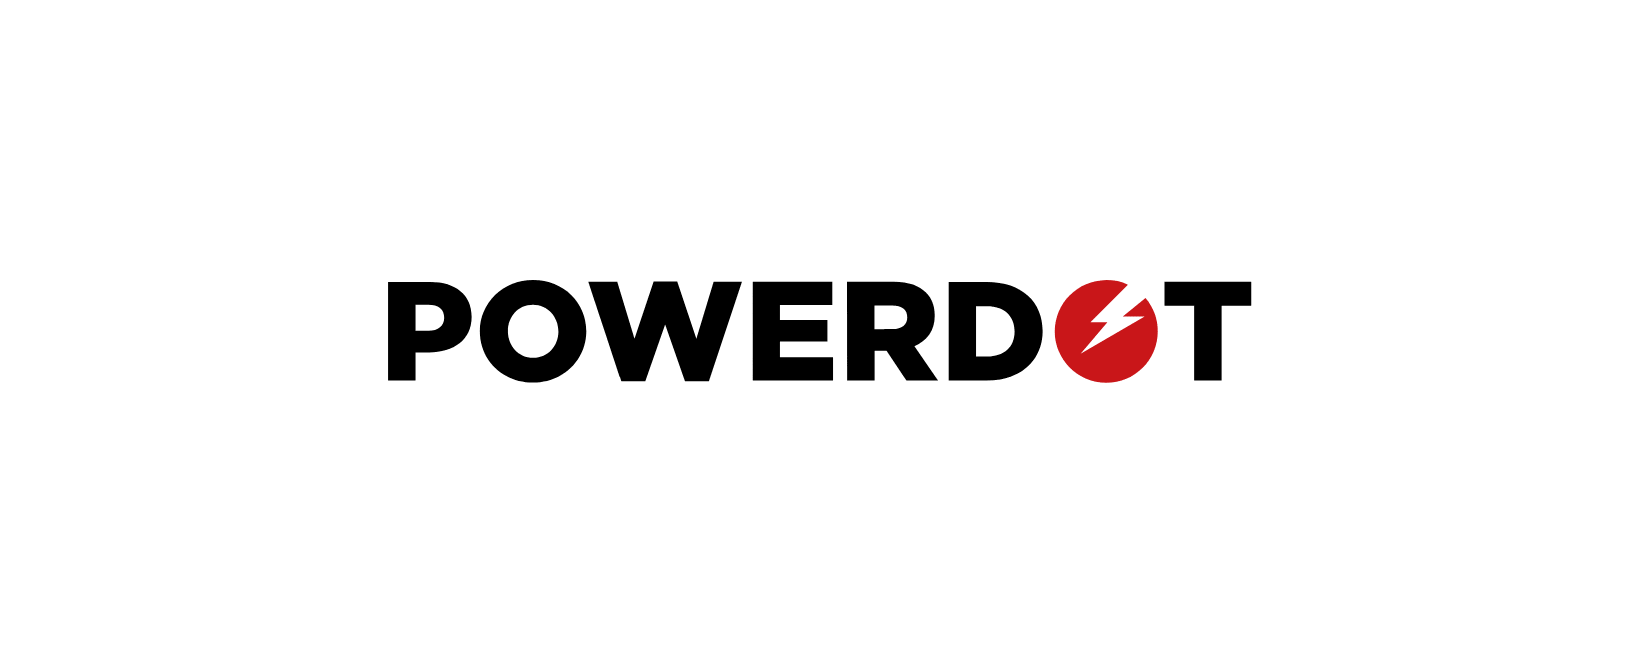 Powerdot Discount Code 2022